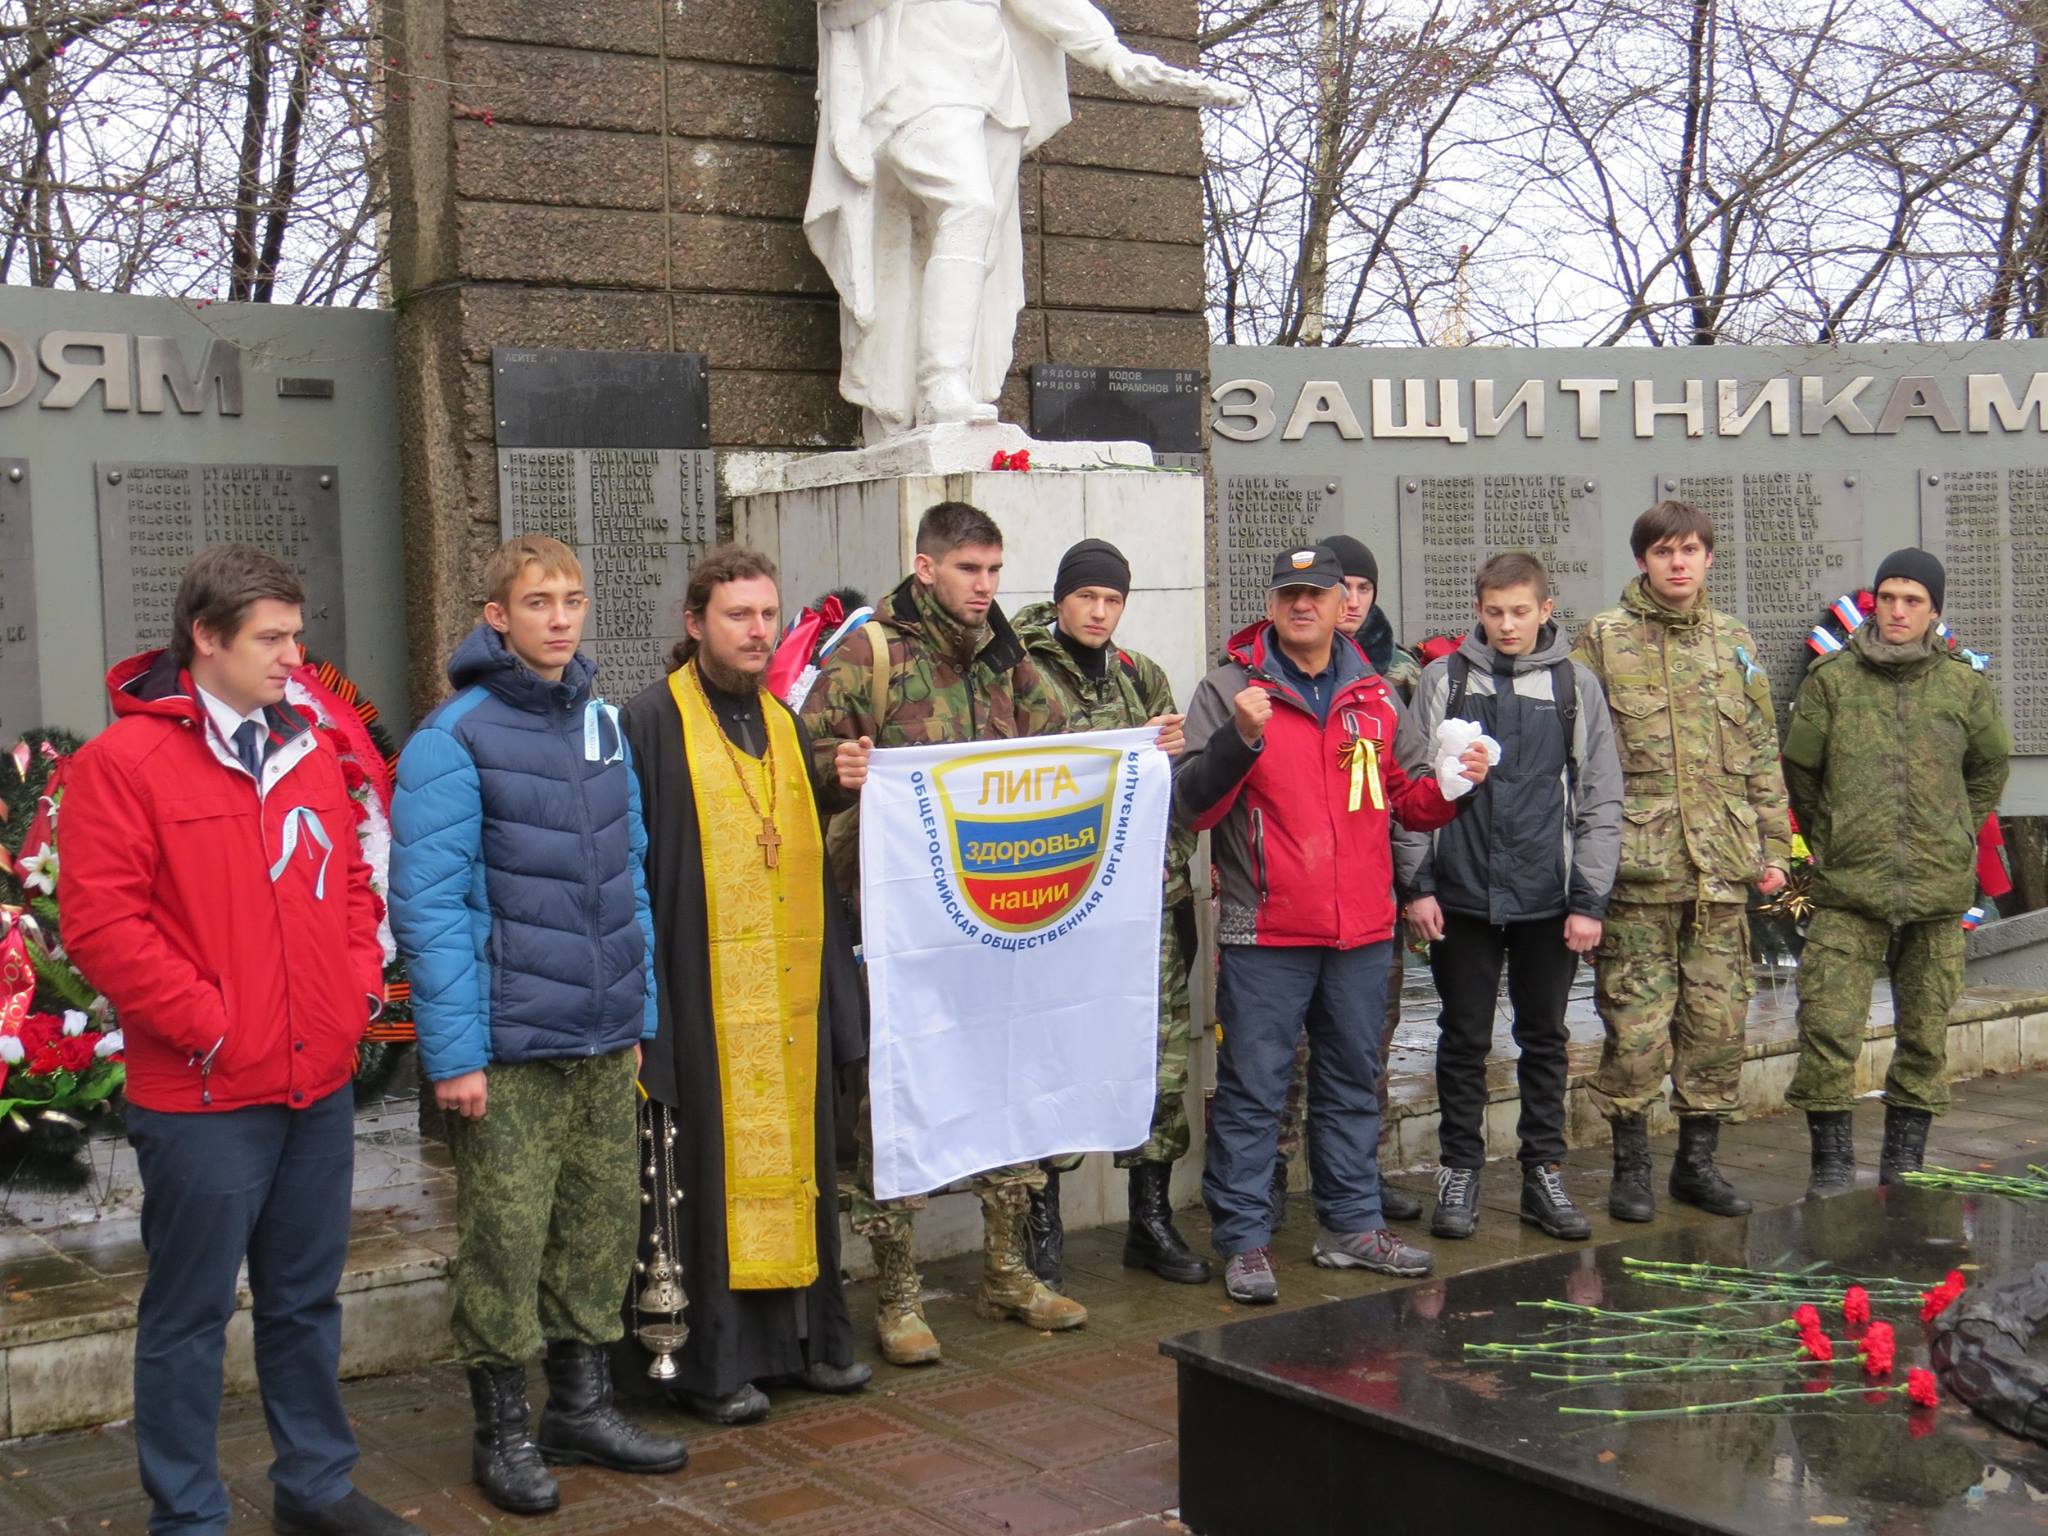 Лига здоровья нации, православные следопыты, Россия молодая, волонтеры России - совершили поход по местам боевой славы 